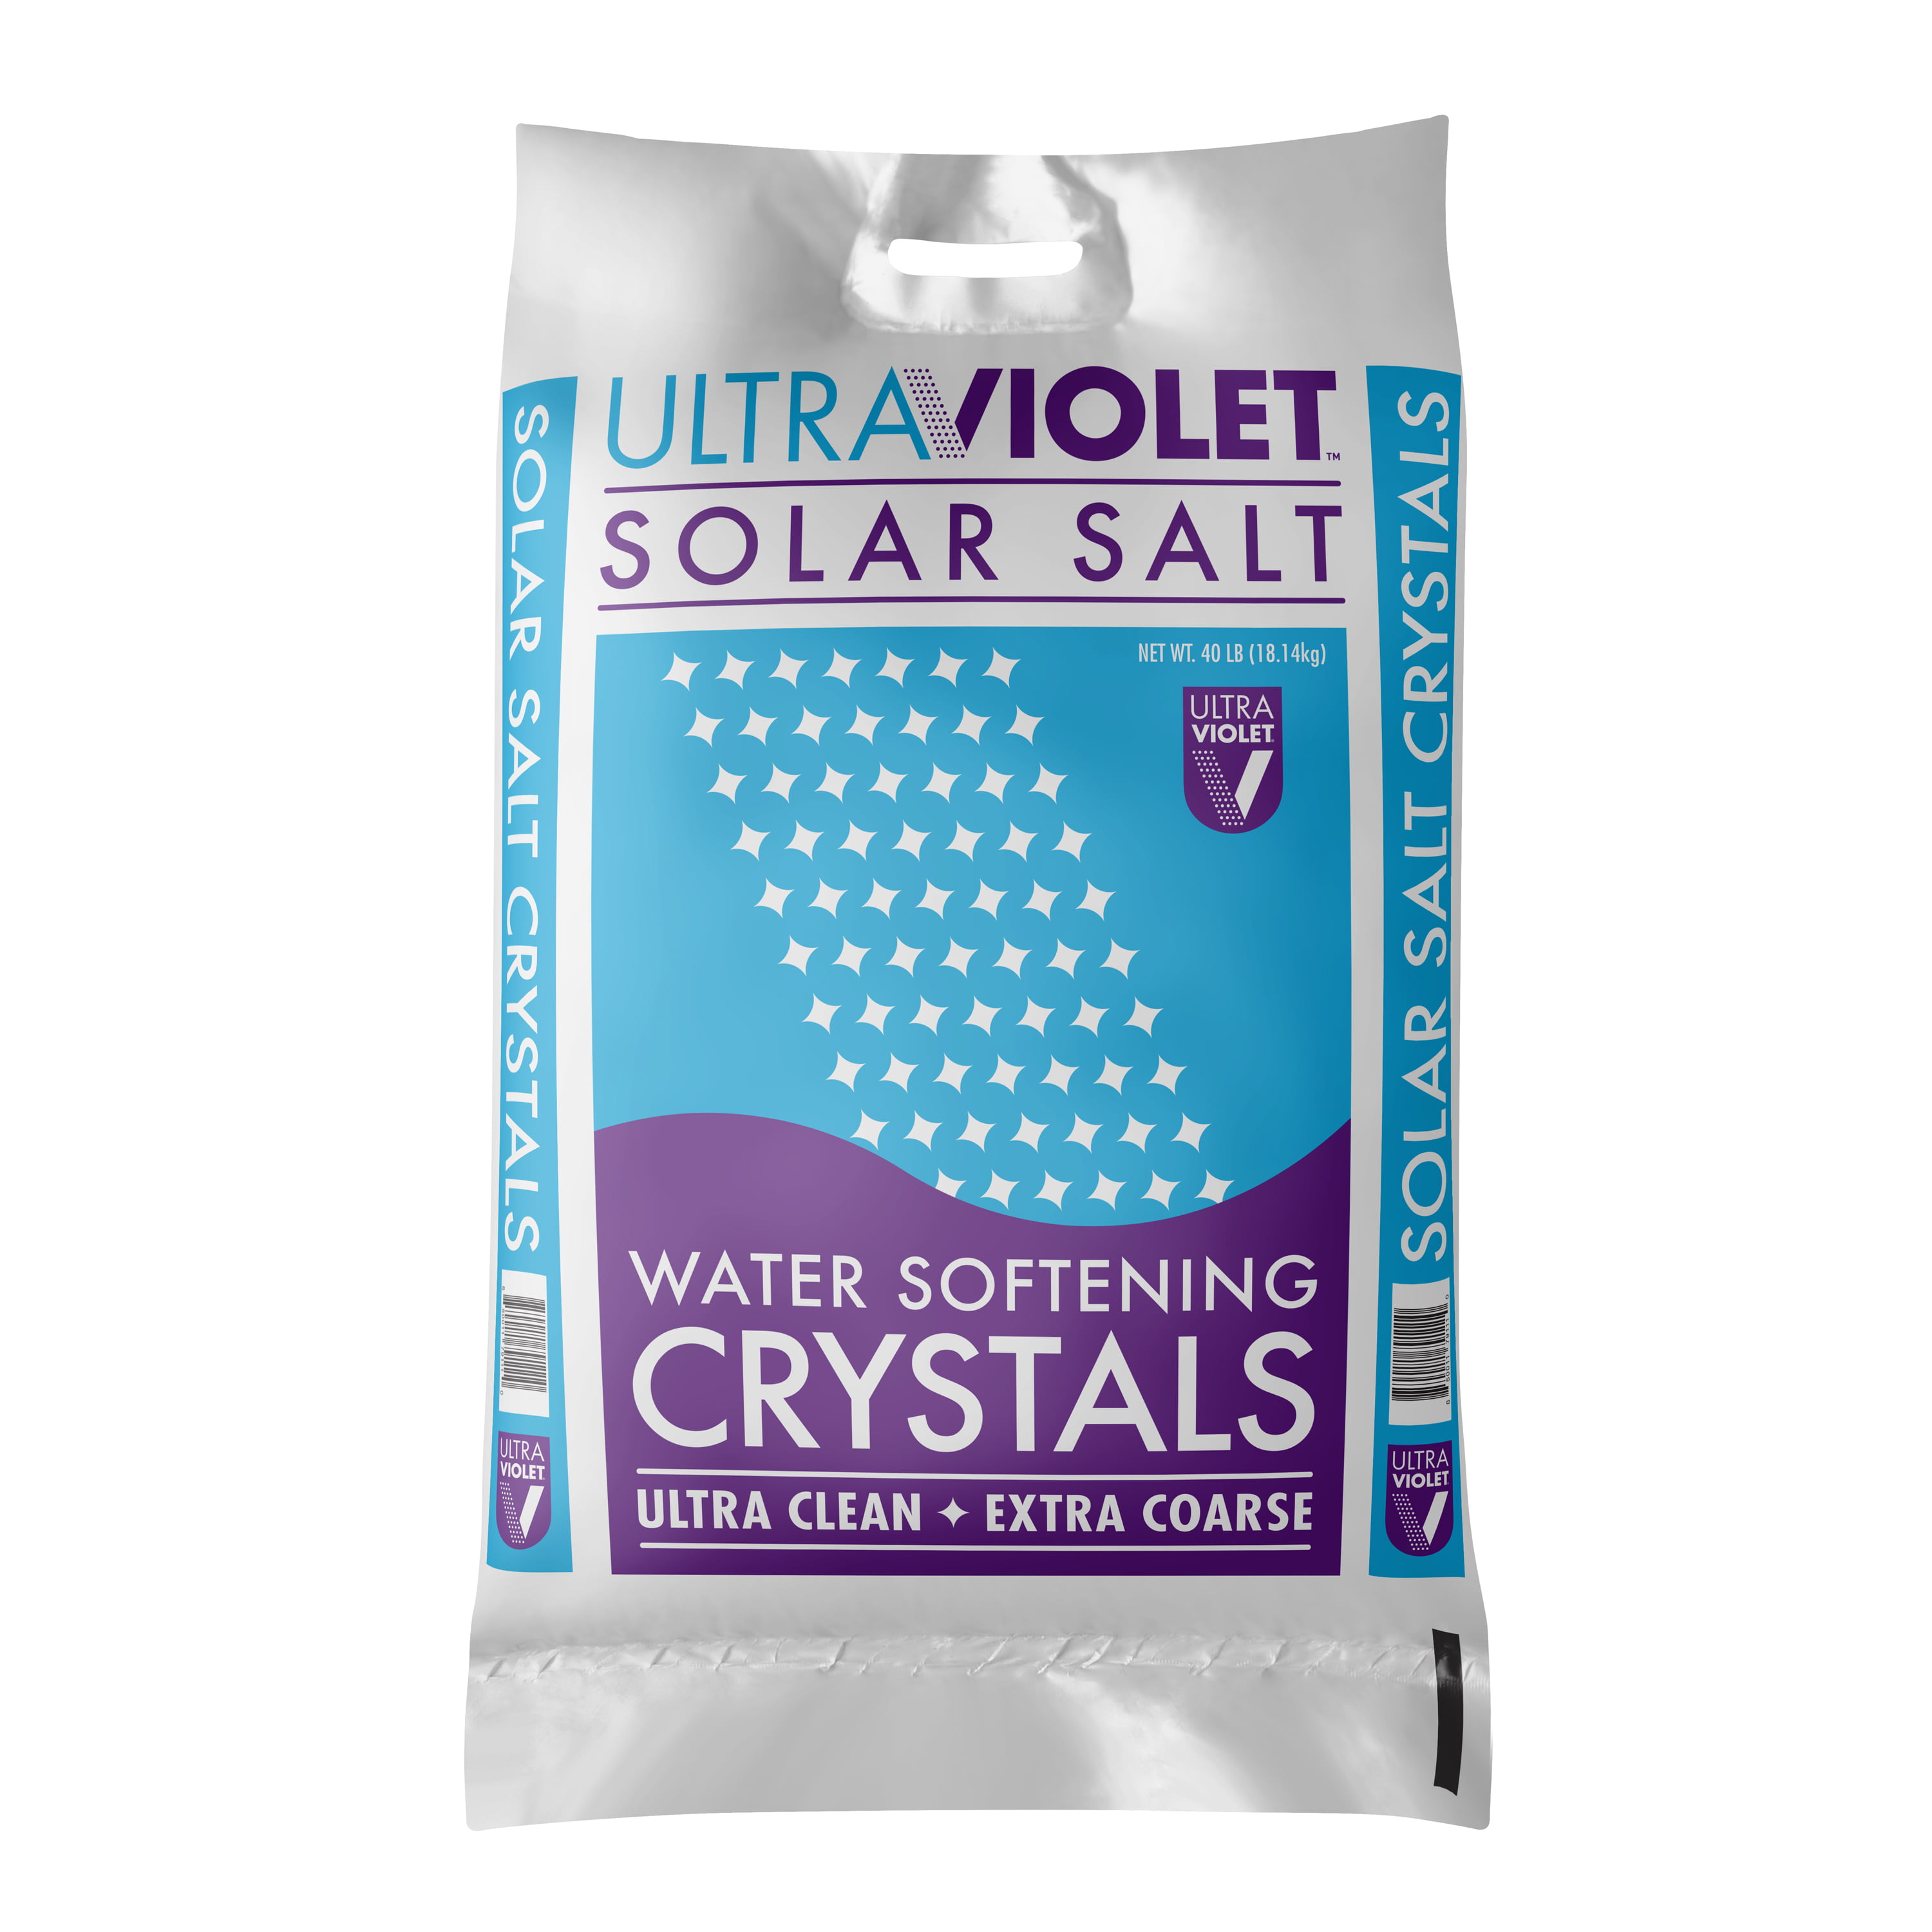 Ultraviolet Solar Salt Water Softening Crystals, Ultra 